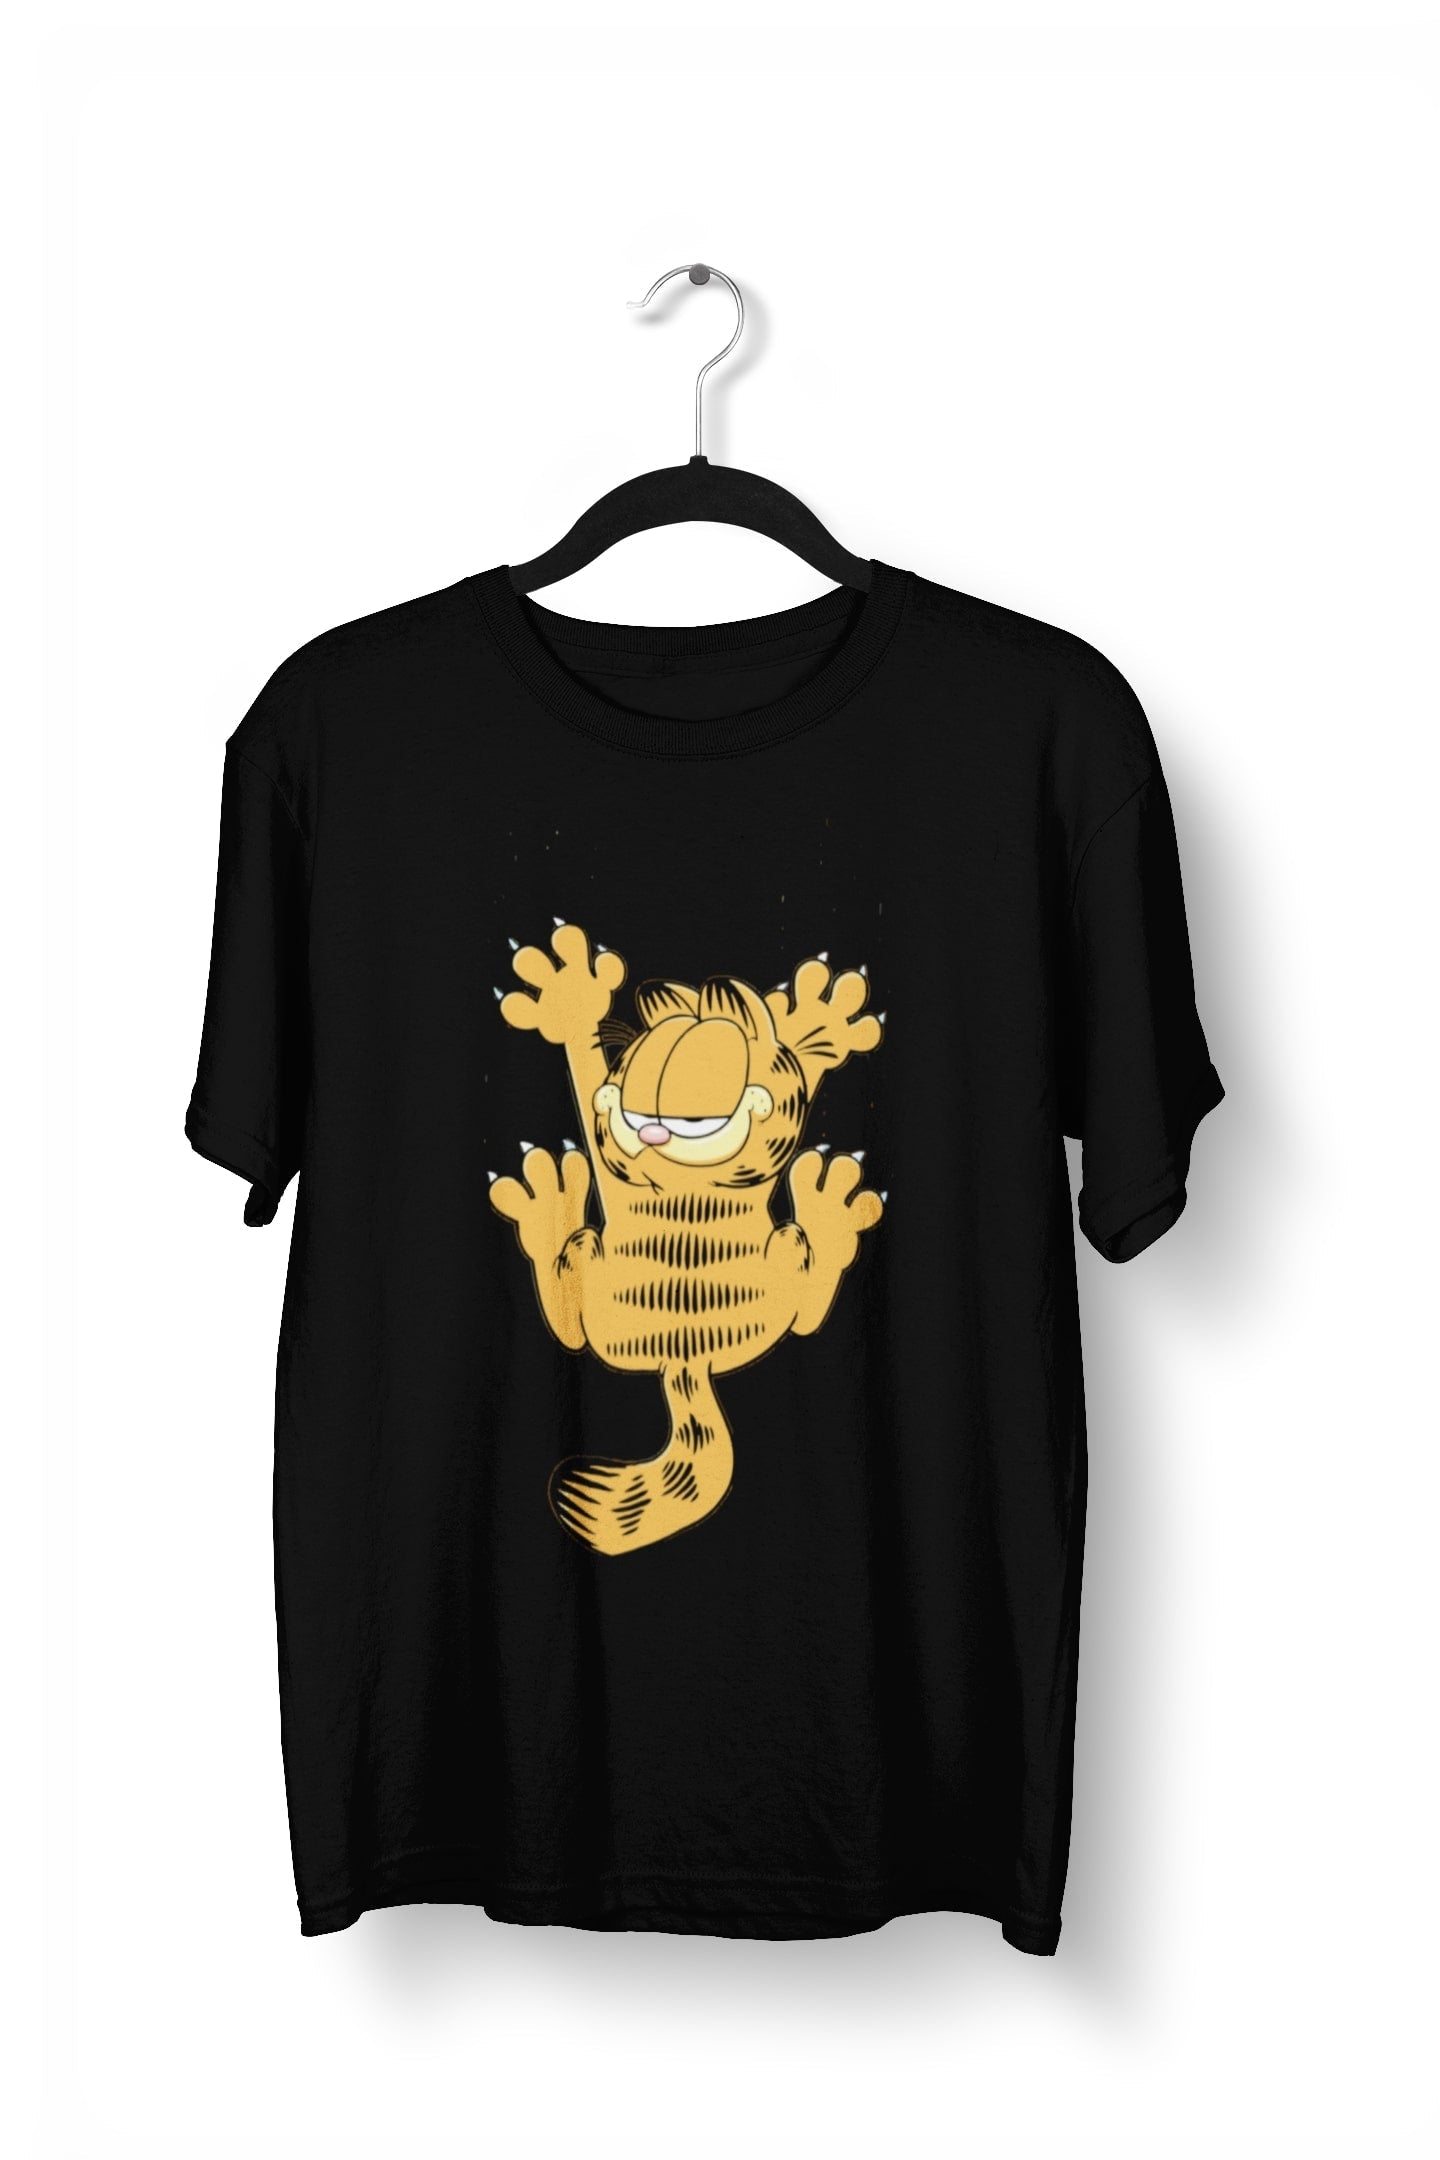 thelegalgang,Garfield Scratch T shirt for Men,MEN.